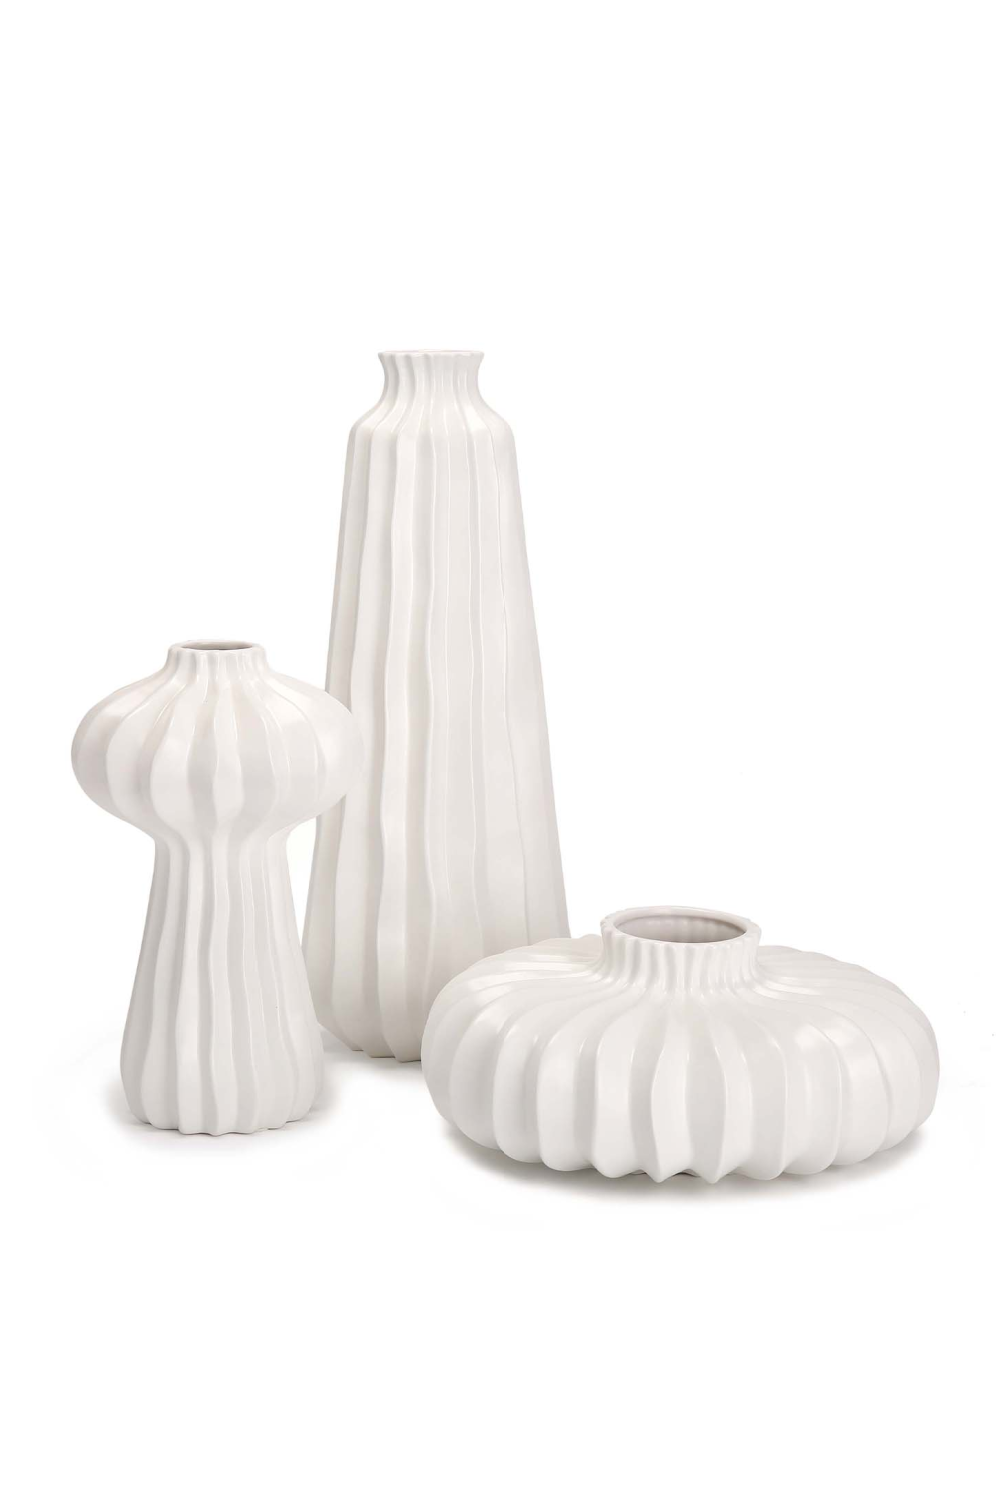 White Ceramic Contemporary Vase | Liang & Eimil Gourd I | OROA.com